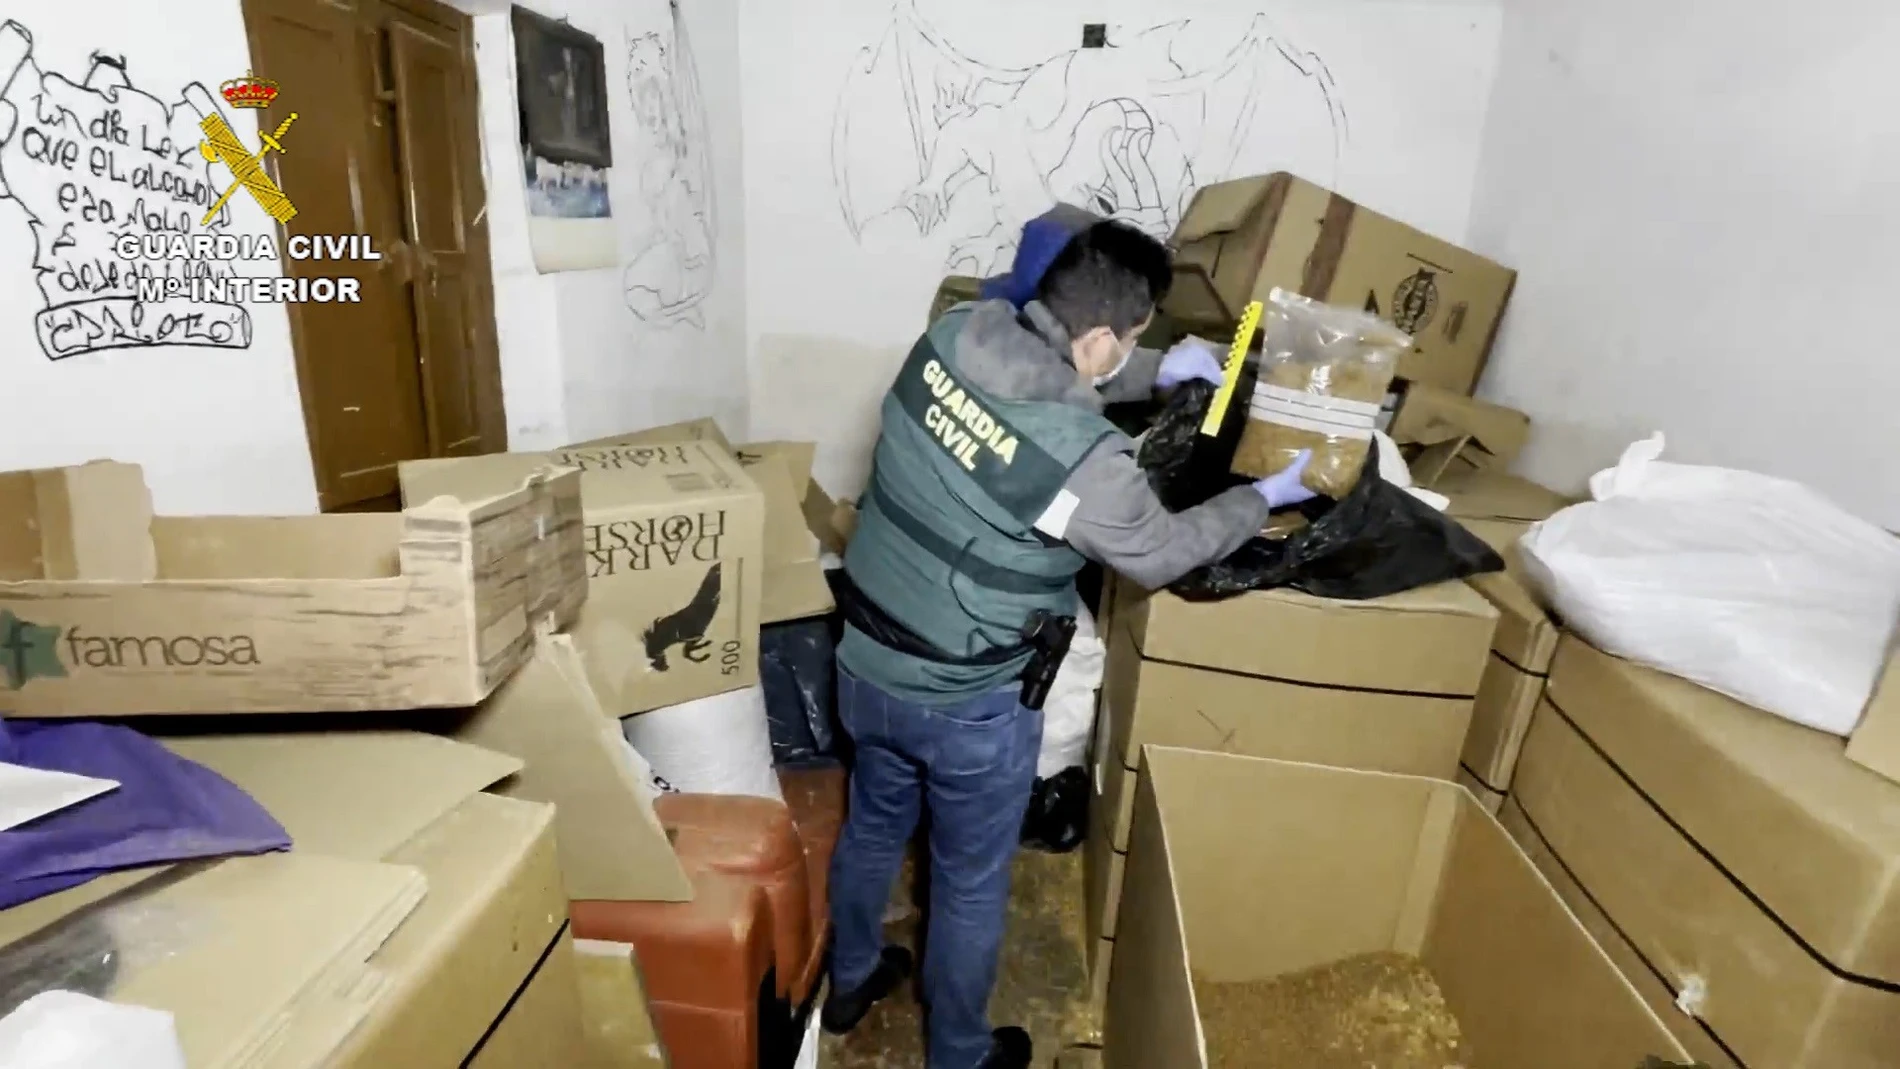 La Guardia Civil interviene más de 14.000 artículos falsificados en Valladolid y Bizkaia